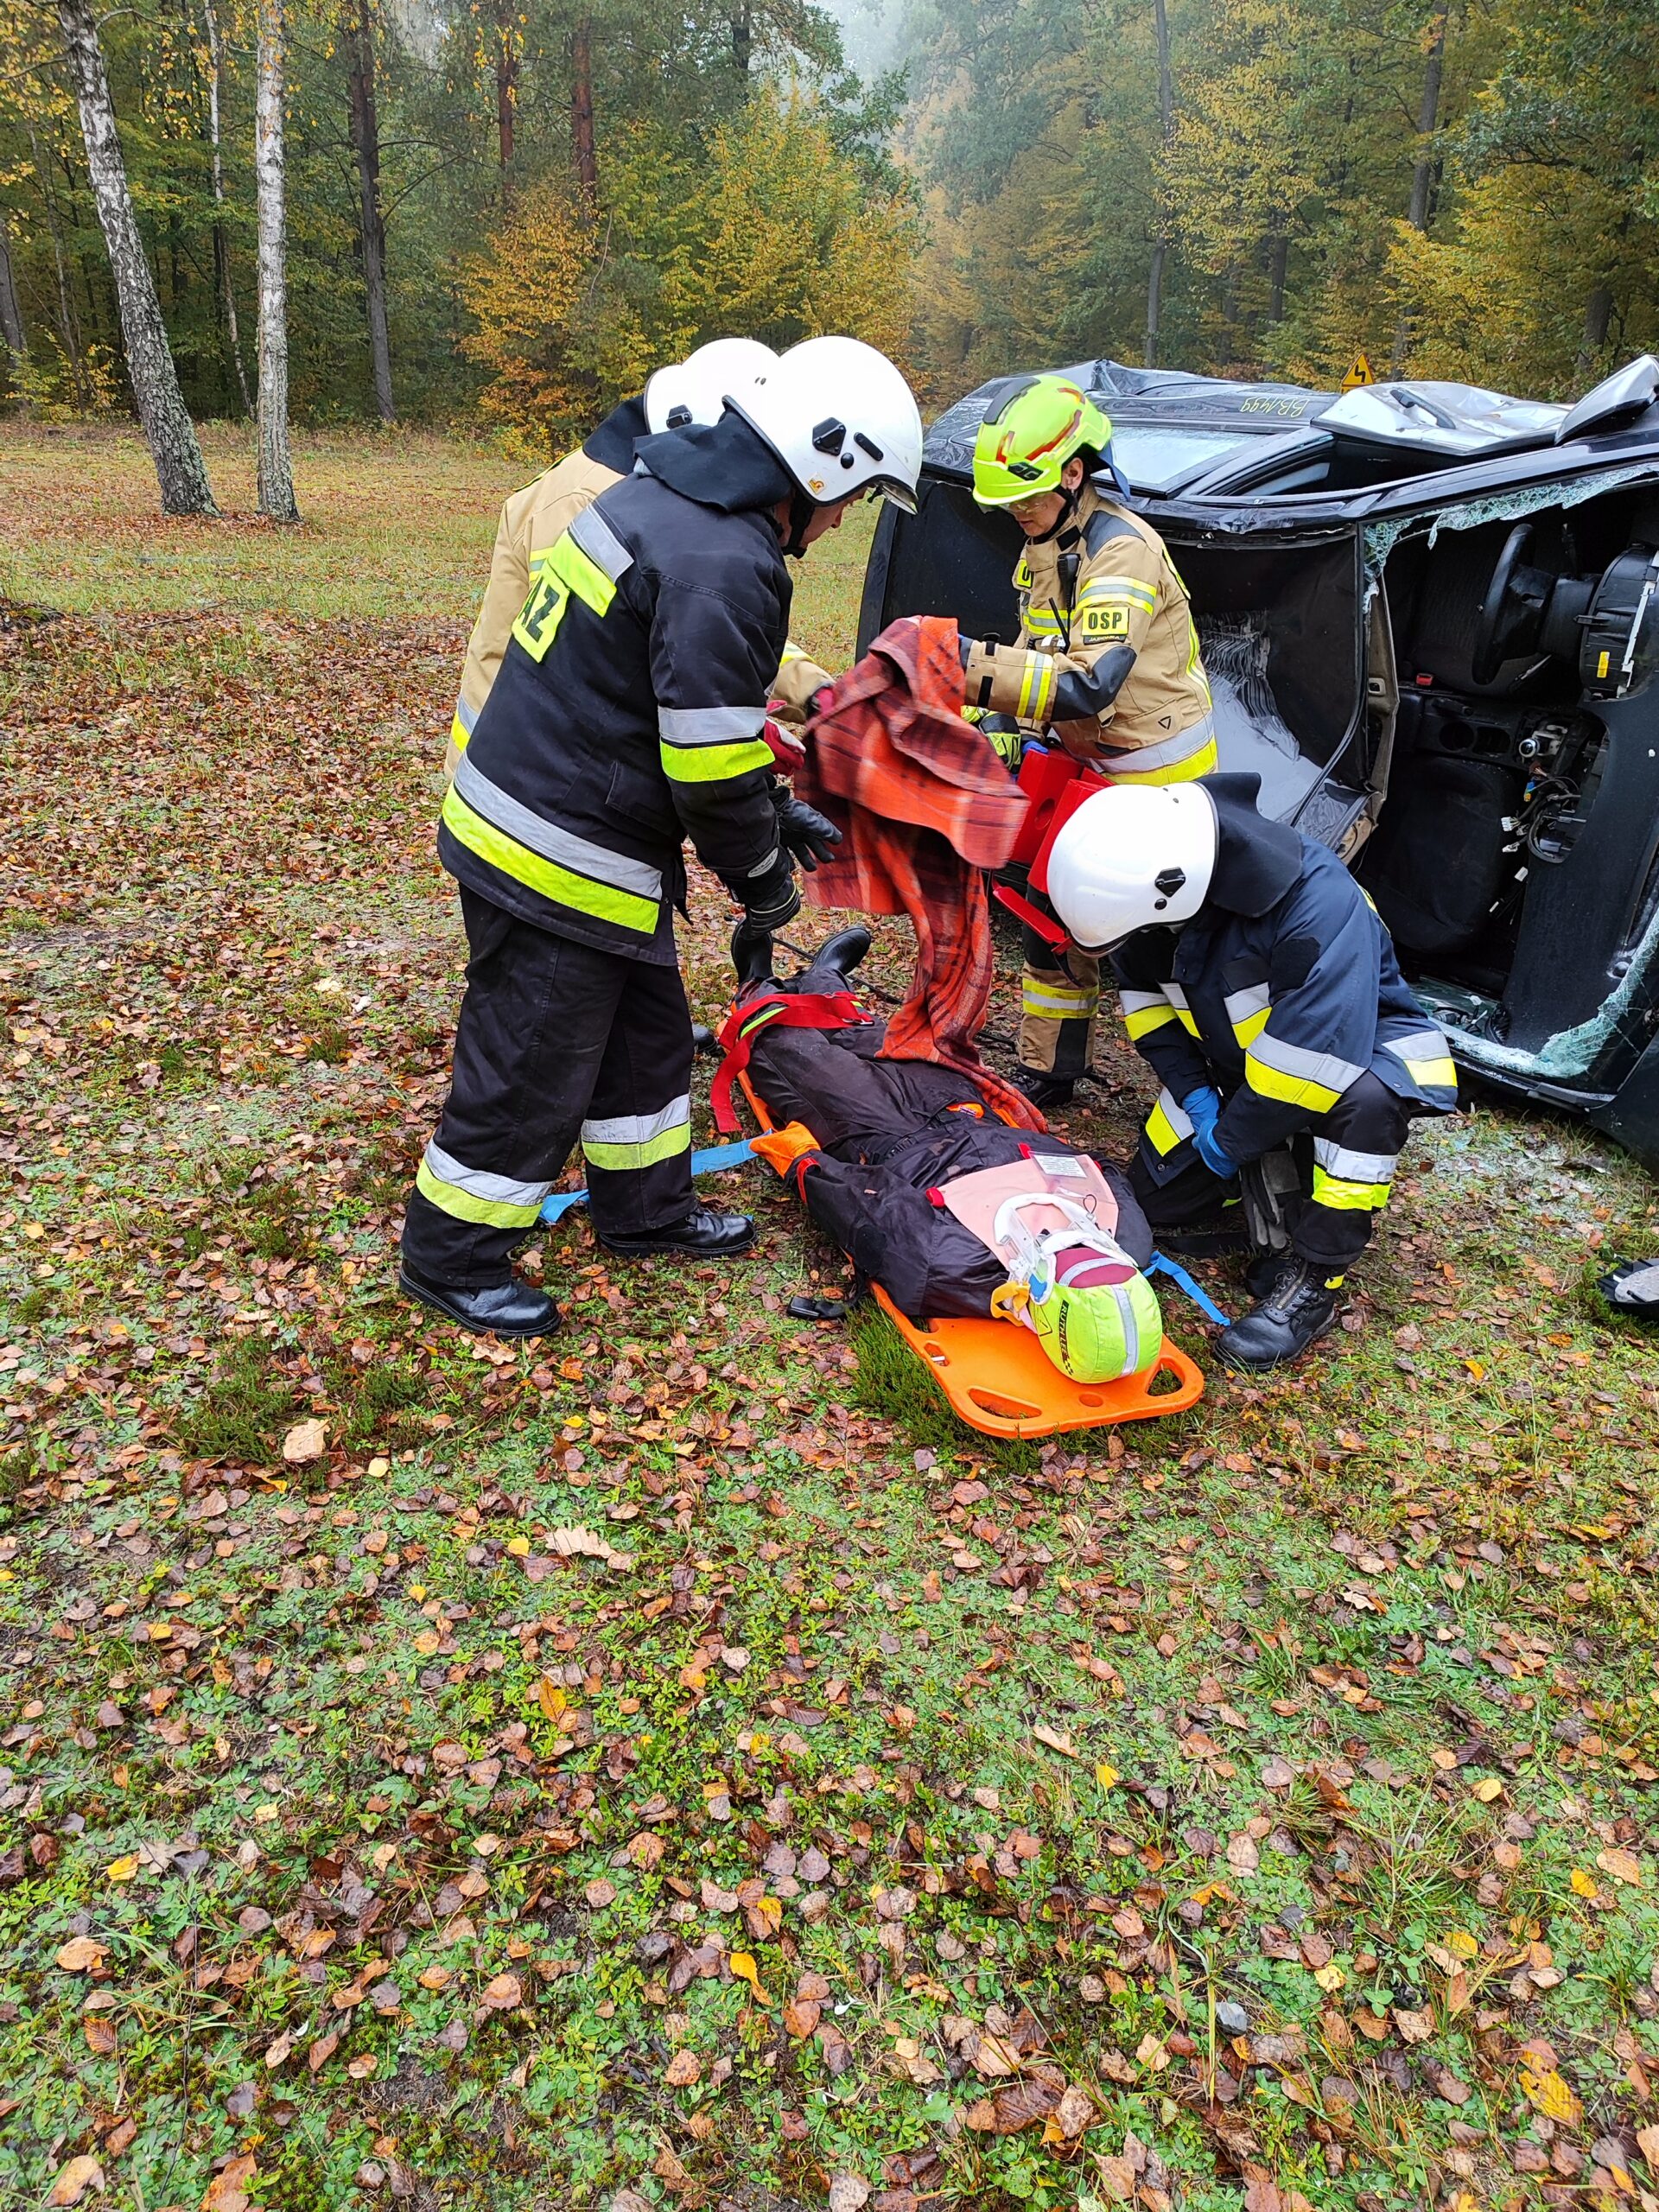 Czterech strażaków ochotników ćwiczą udzielanie pierwszej pomocy przedmedycznej. na ziemi leży deska ratownicza a na niej fantom szkoleniowy. Za strażakami na boku leży rozbity samochód osobowy.